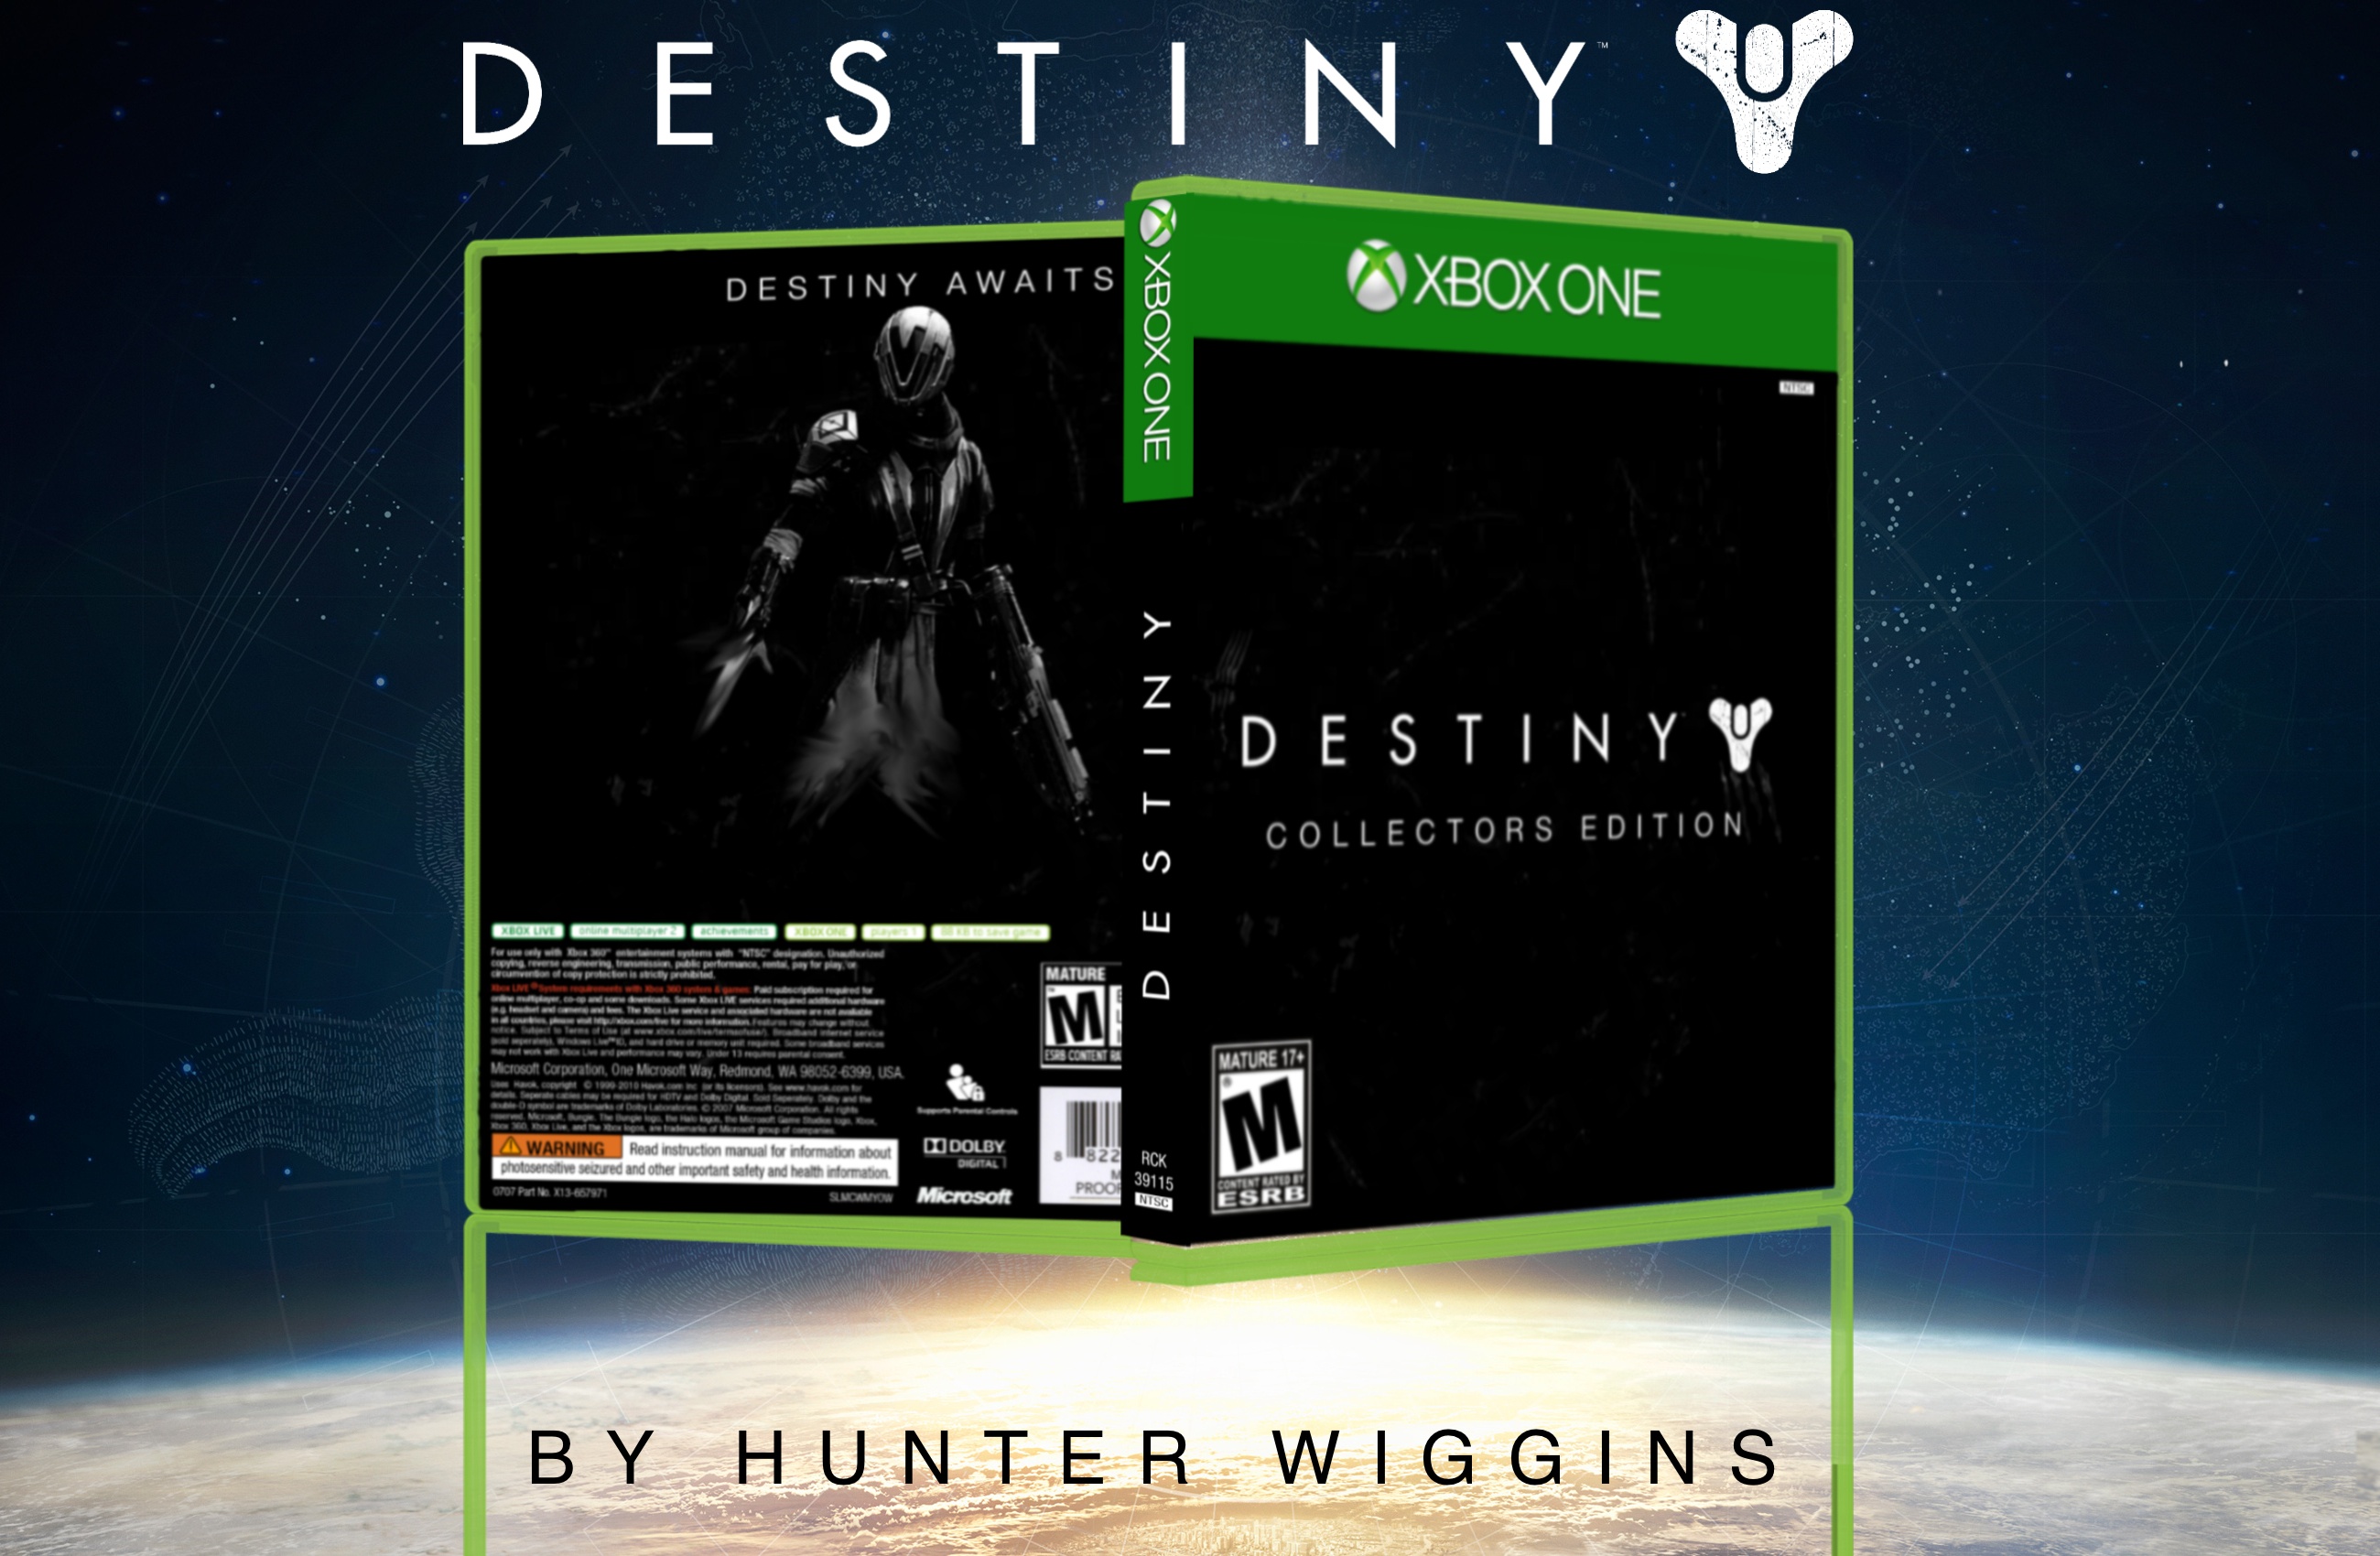 Destiny: Collectors Edition box cover